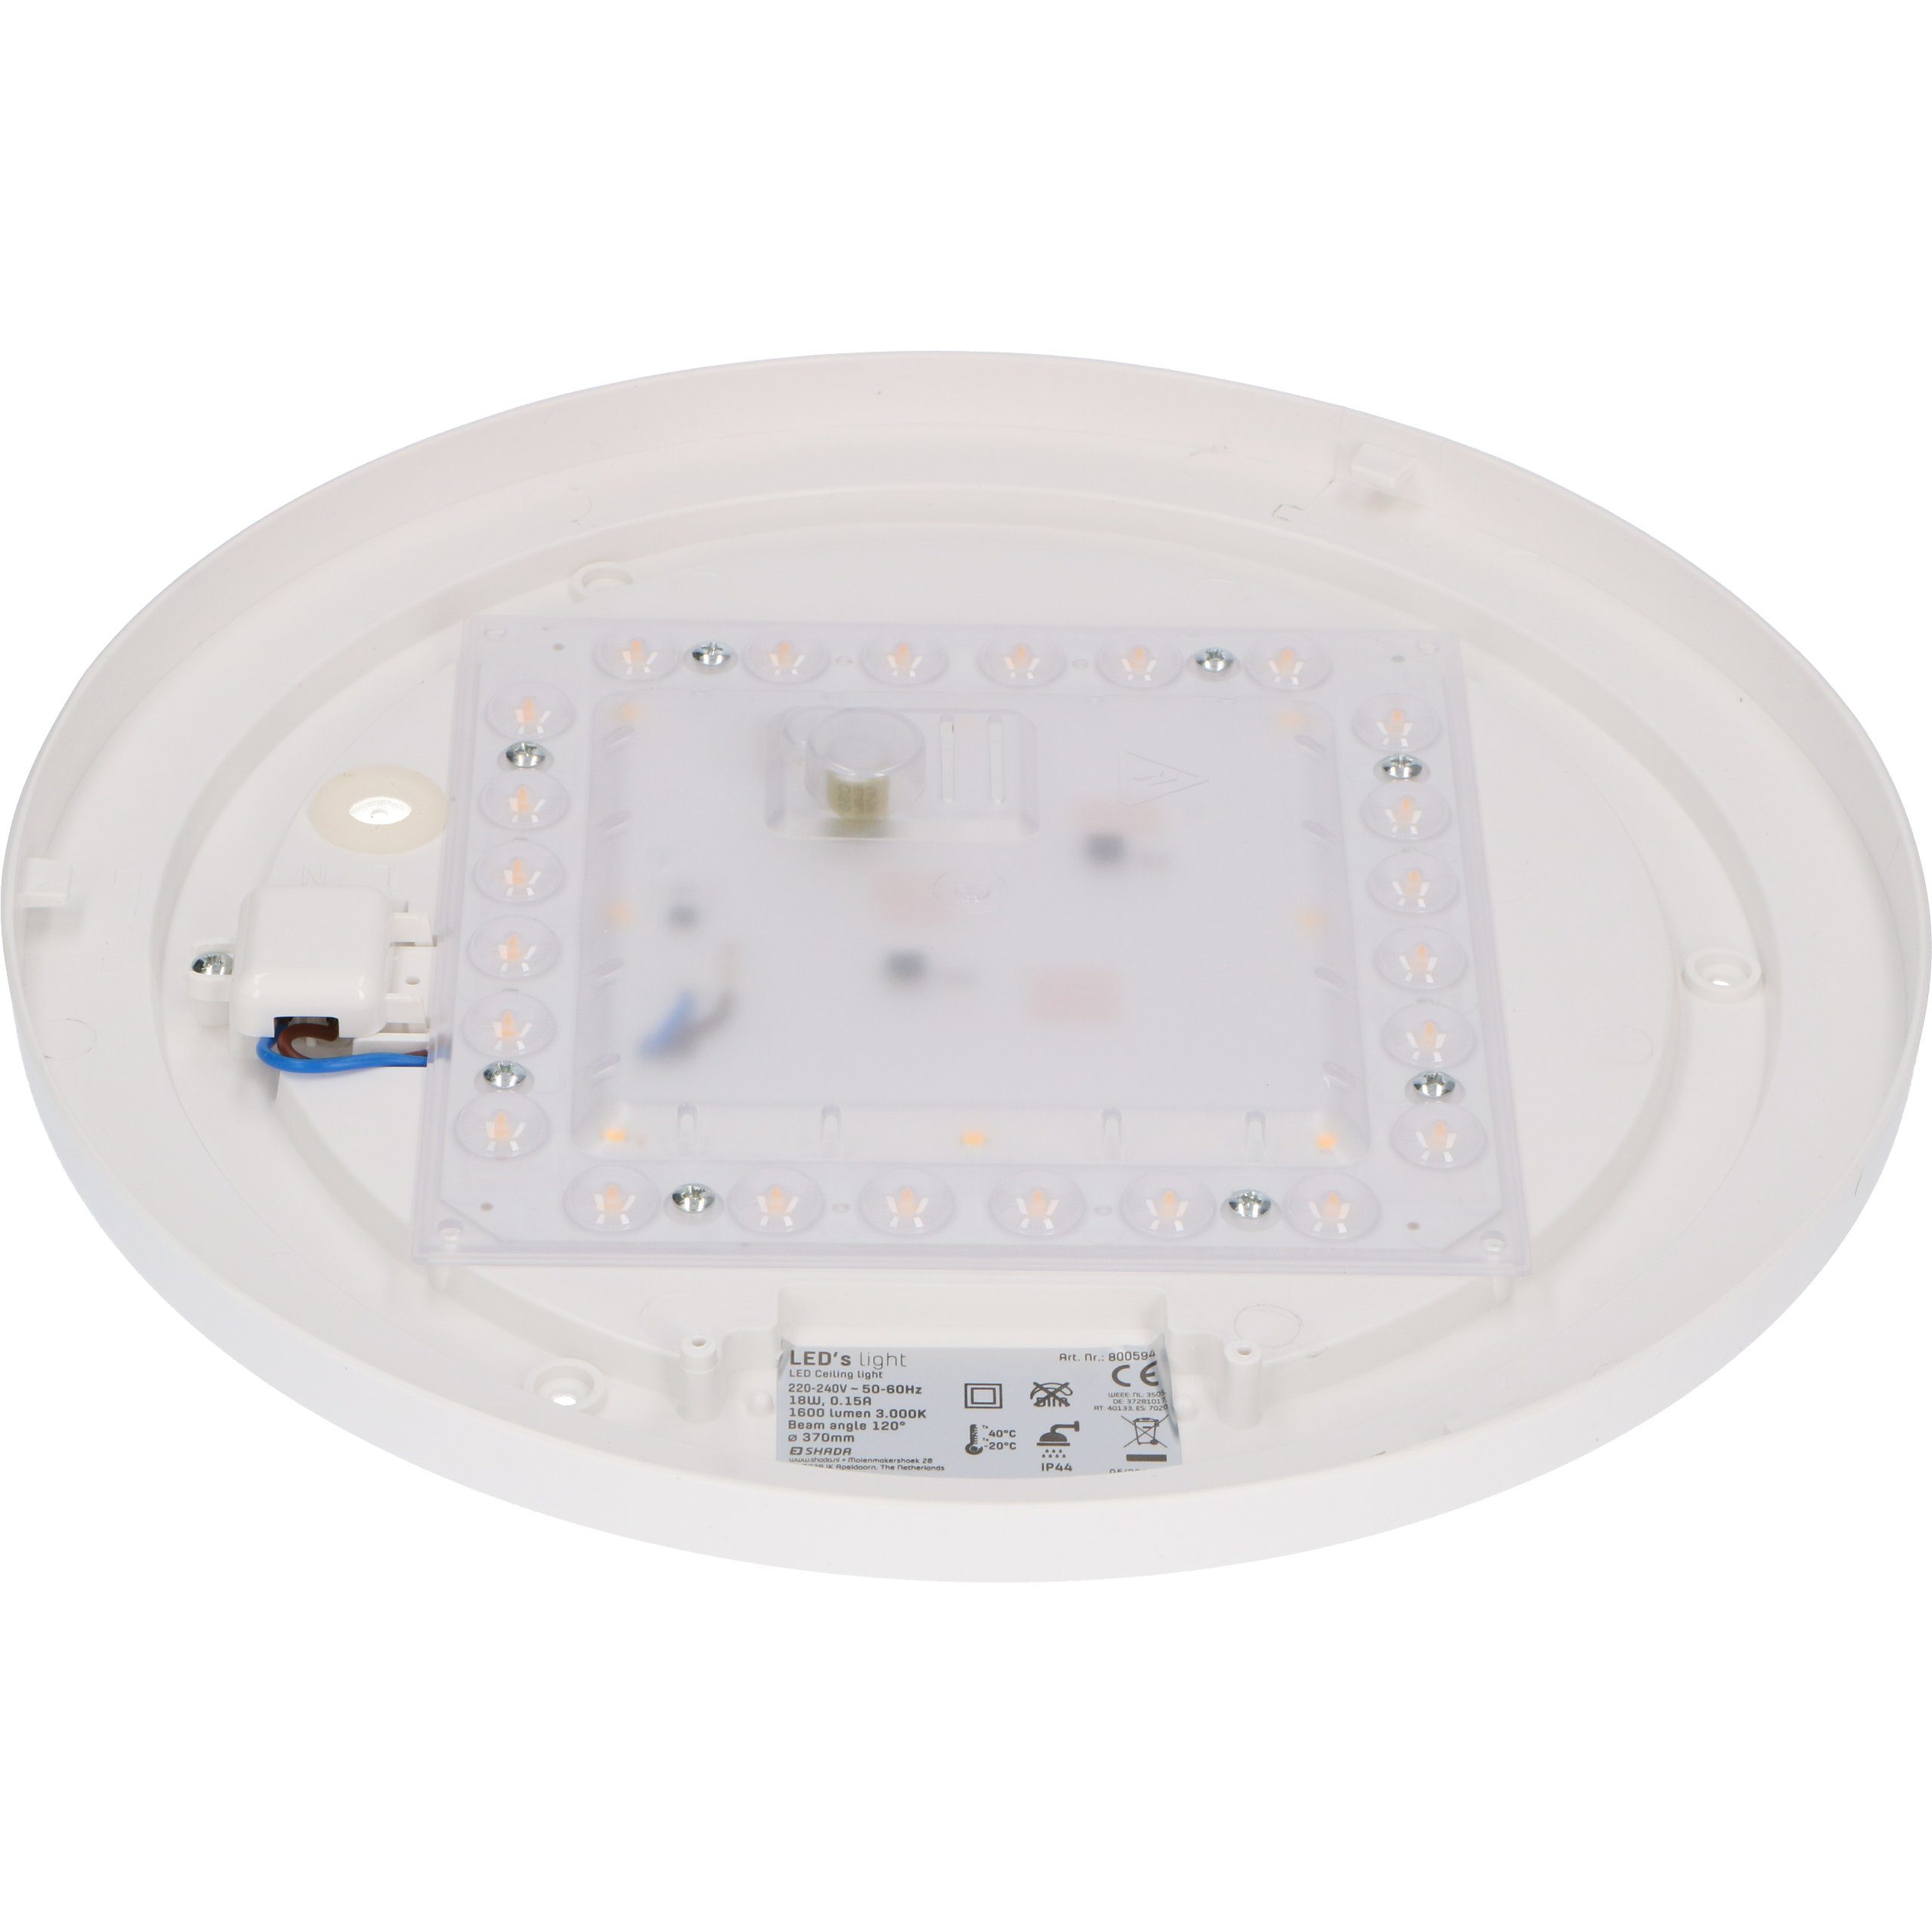 Deckenleuchte IP44 3 LED's 0800594 LED geeignet light 18W Deckenleuchte, 37cm Schutzbereich LED, warmweiß